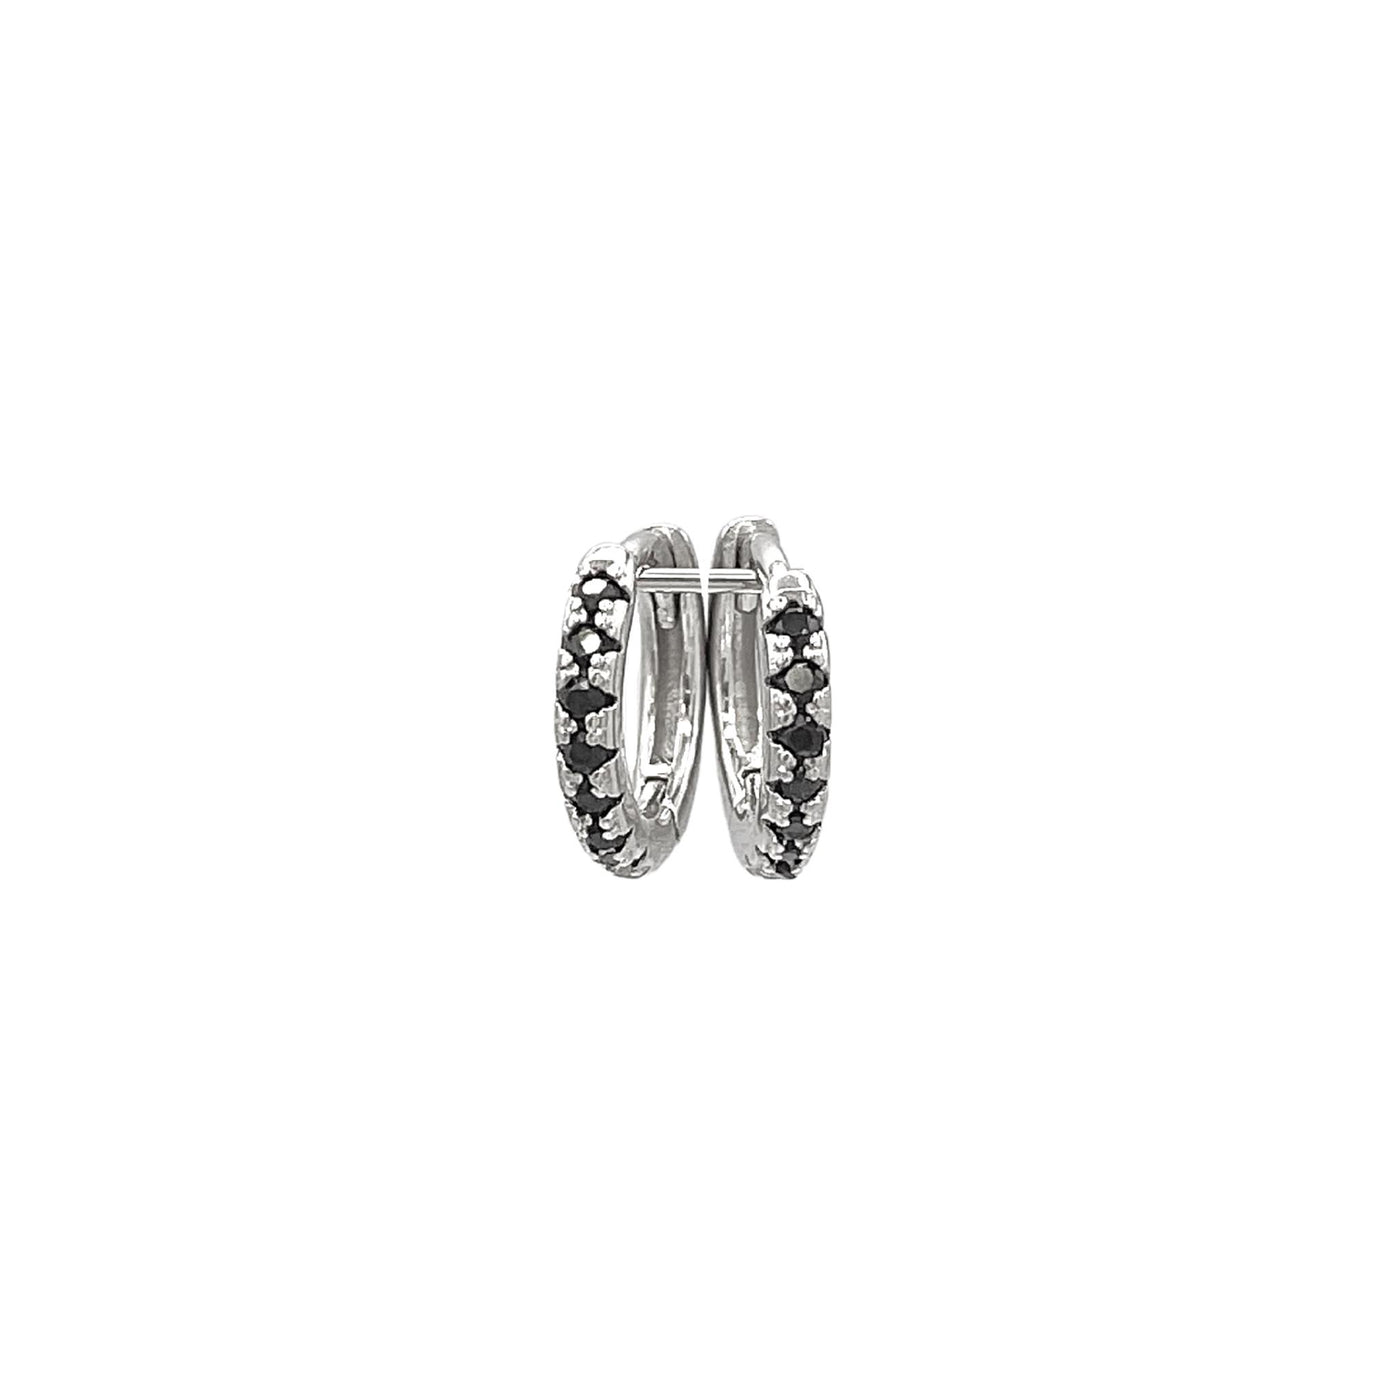 Silver hoop earrings with stones - rhodium - 10 mm